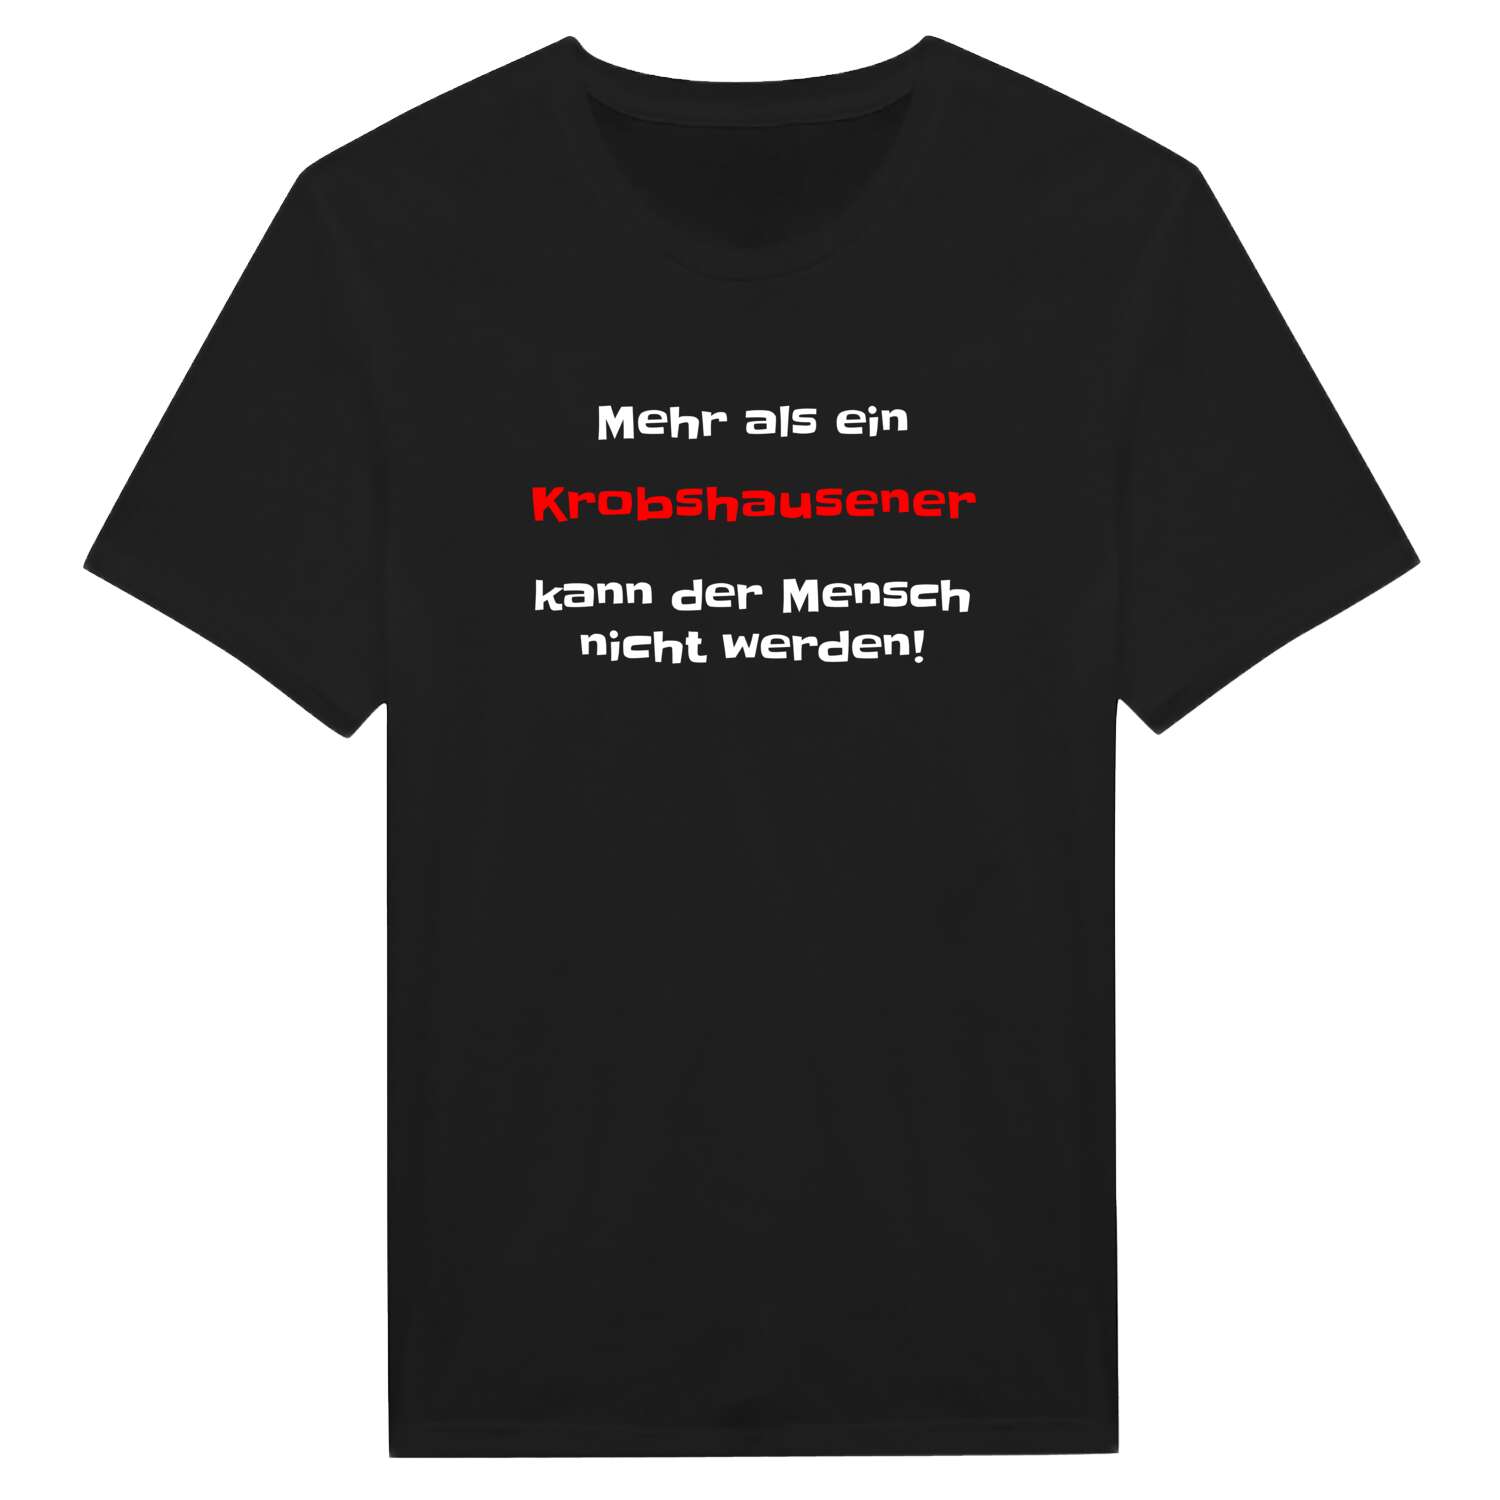 Krobshausen T-Shirt »Mehr als ein«